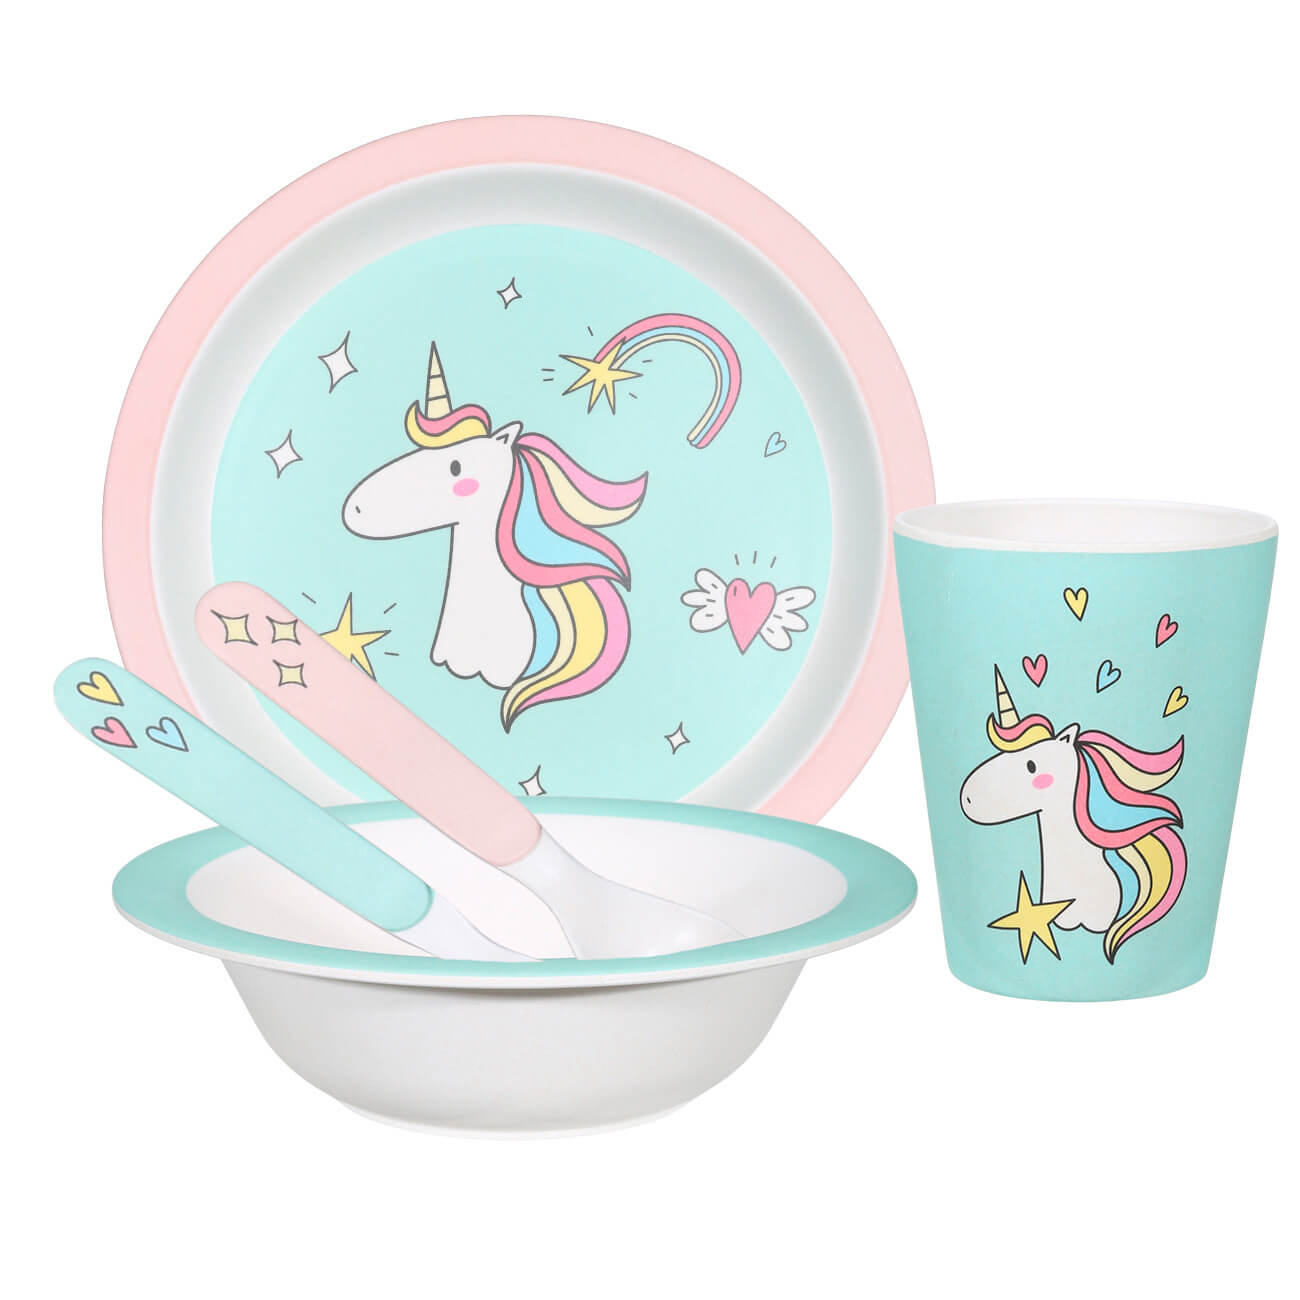 Набор посуды, детский, 5 пр, бамбук, розово-мятный, Единорог, Unicorn набор посуды детский 5 пр бамбук розово мятный единорог unicorn